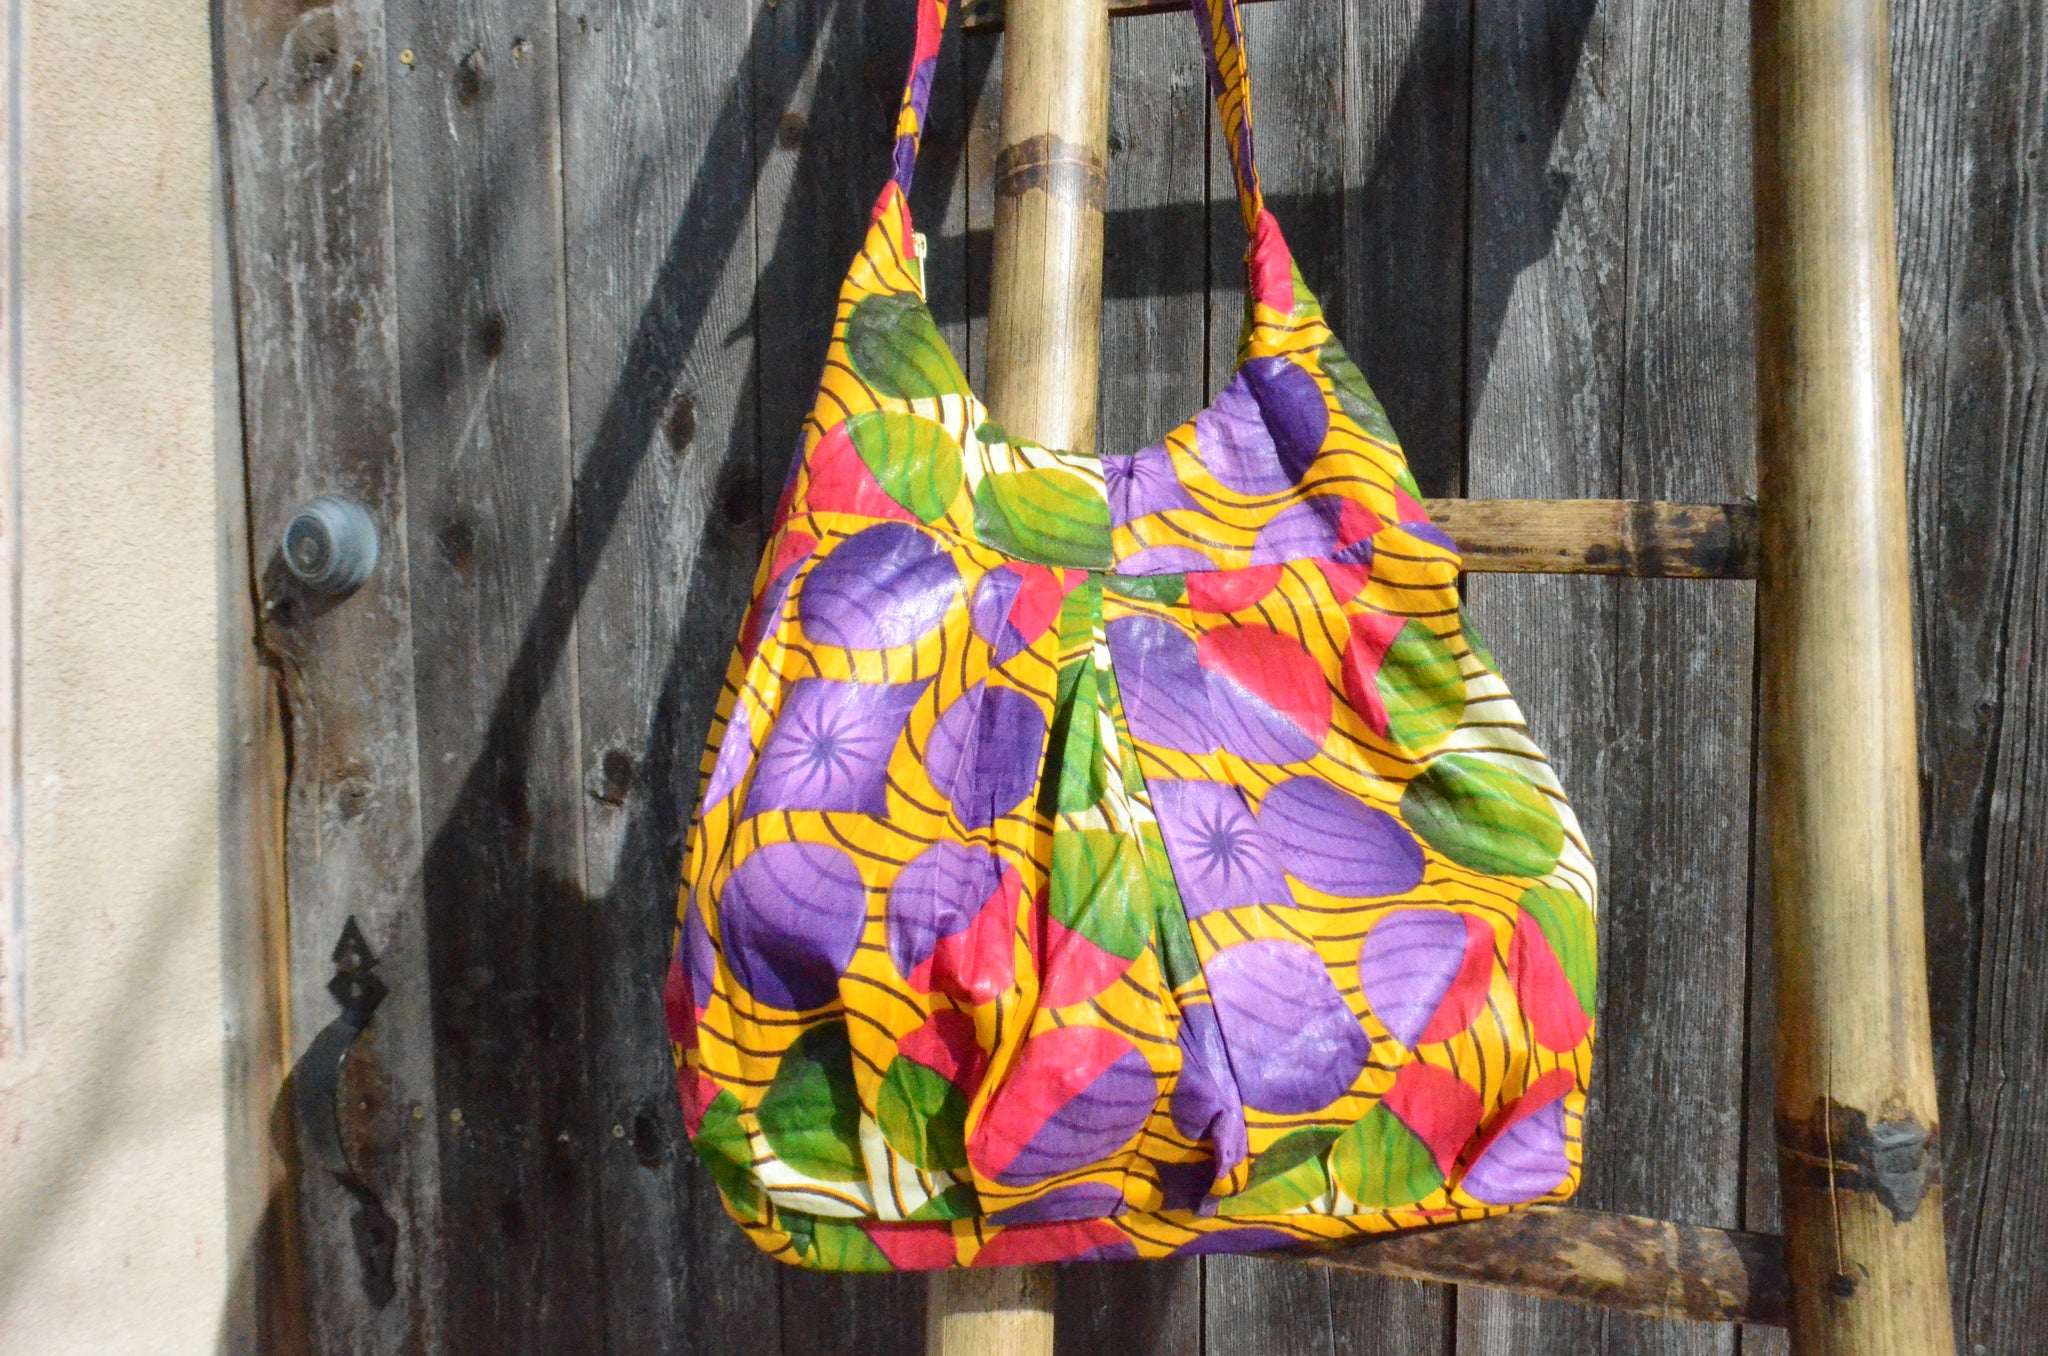 Colored Circles - Malawi Bag